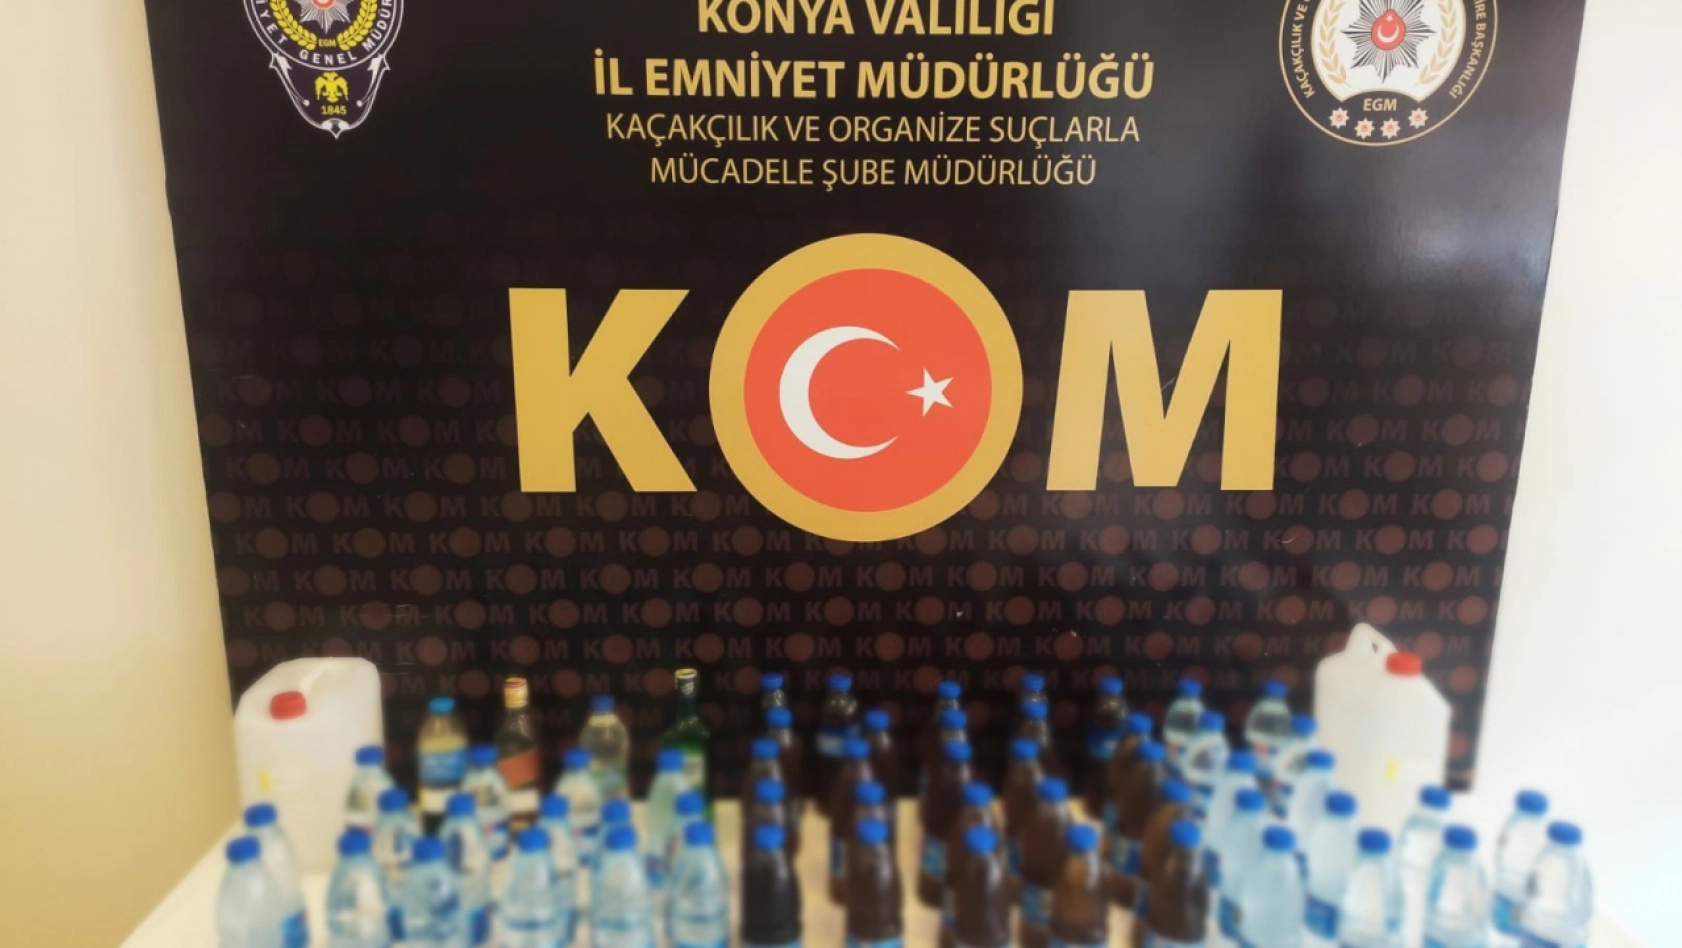 Konya'da onlarca litre kaçak içki ele geçirildi